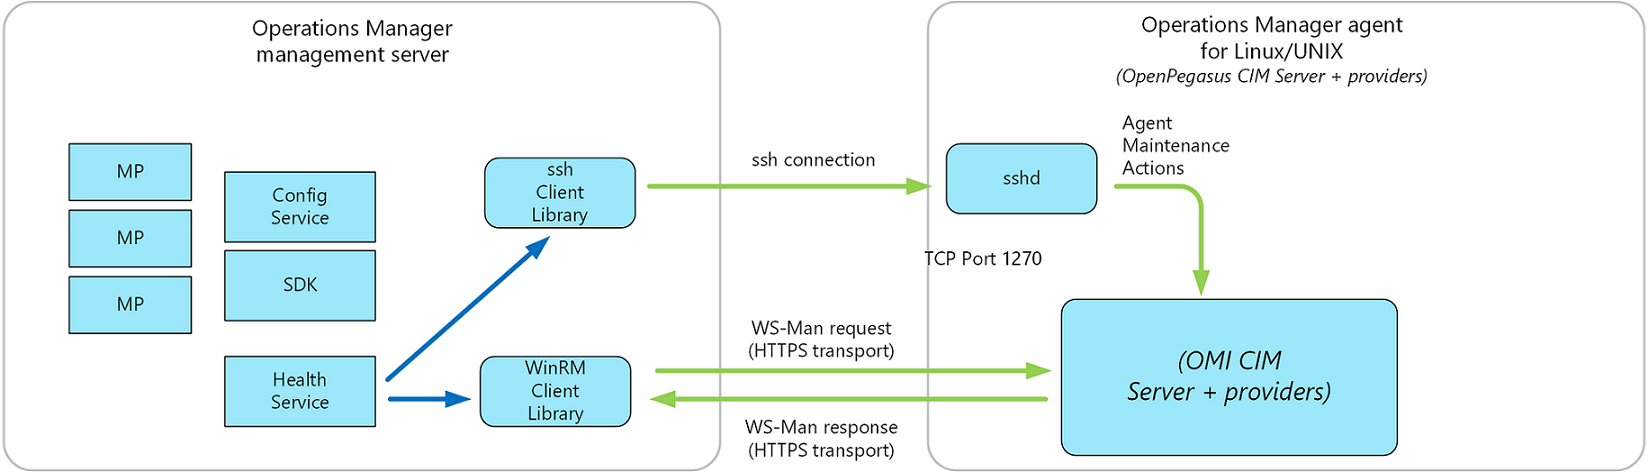 Diagramme de l’architecture logicielle mise à jour de l’agent UNIX/Linux Operations Manager.